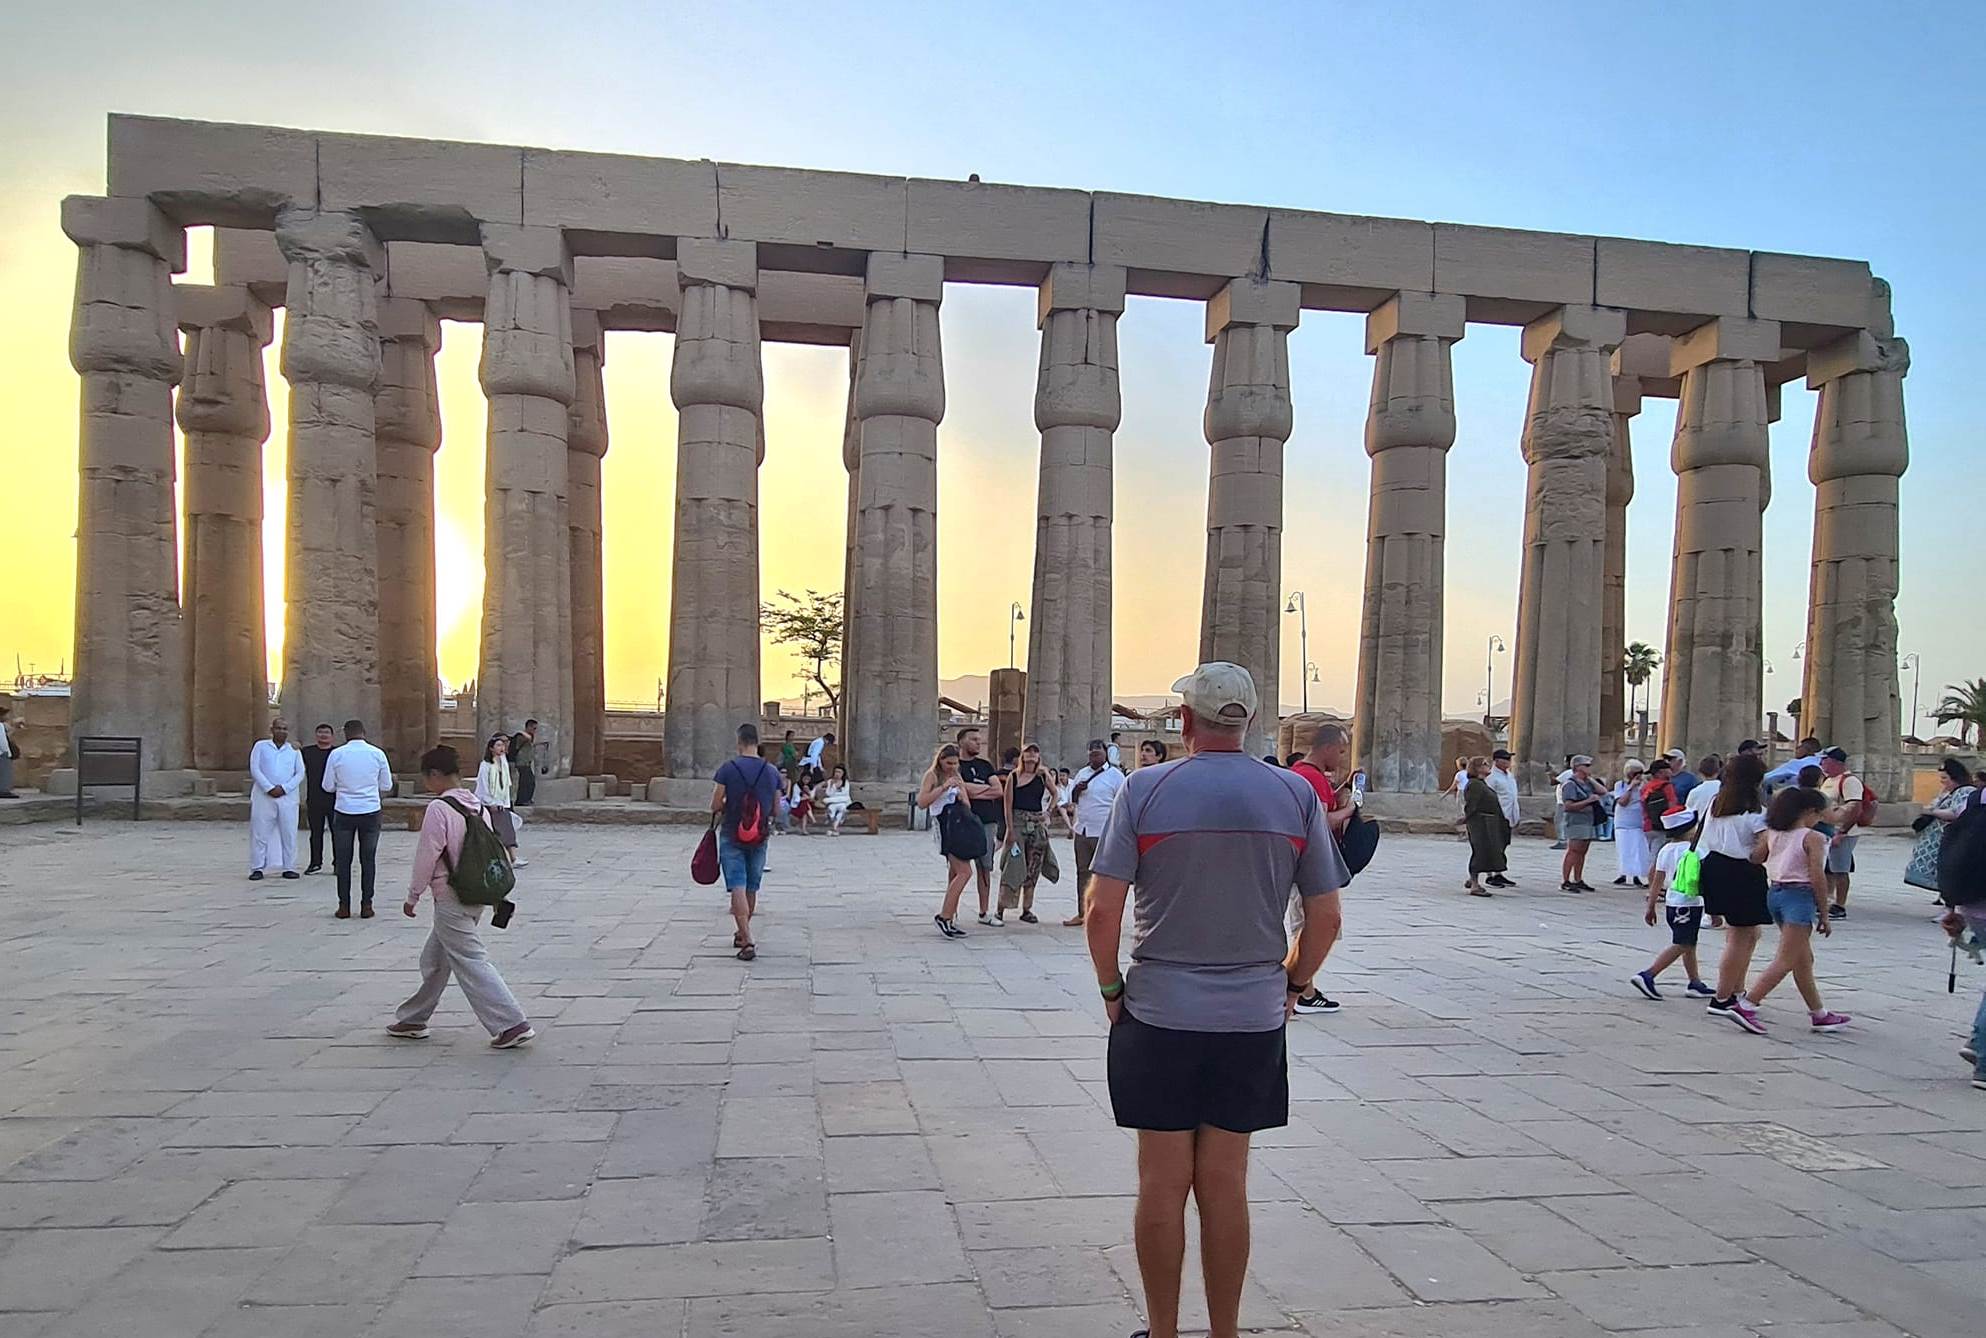 السياح يستمتعون بزيارات مميزة لمعبد الأقصر بكورنيش نيل الأقصر